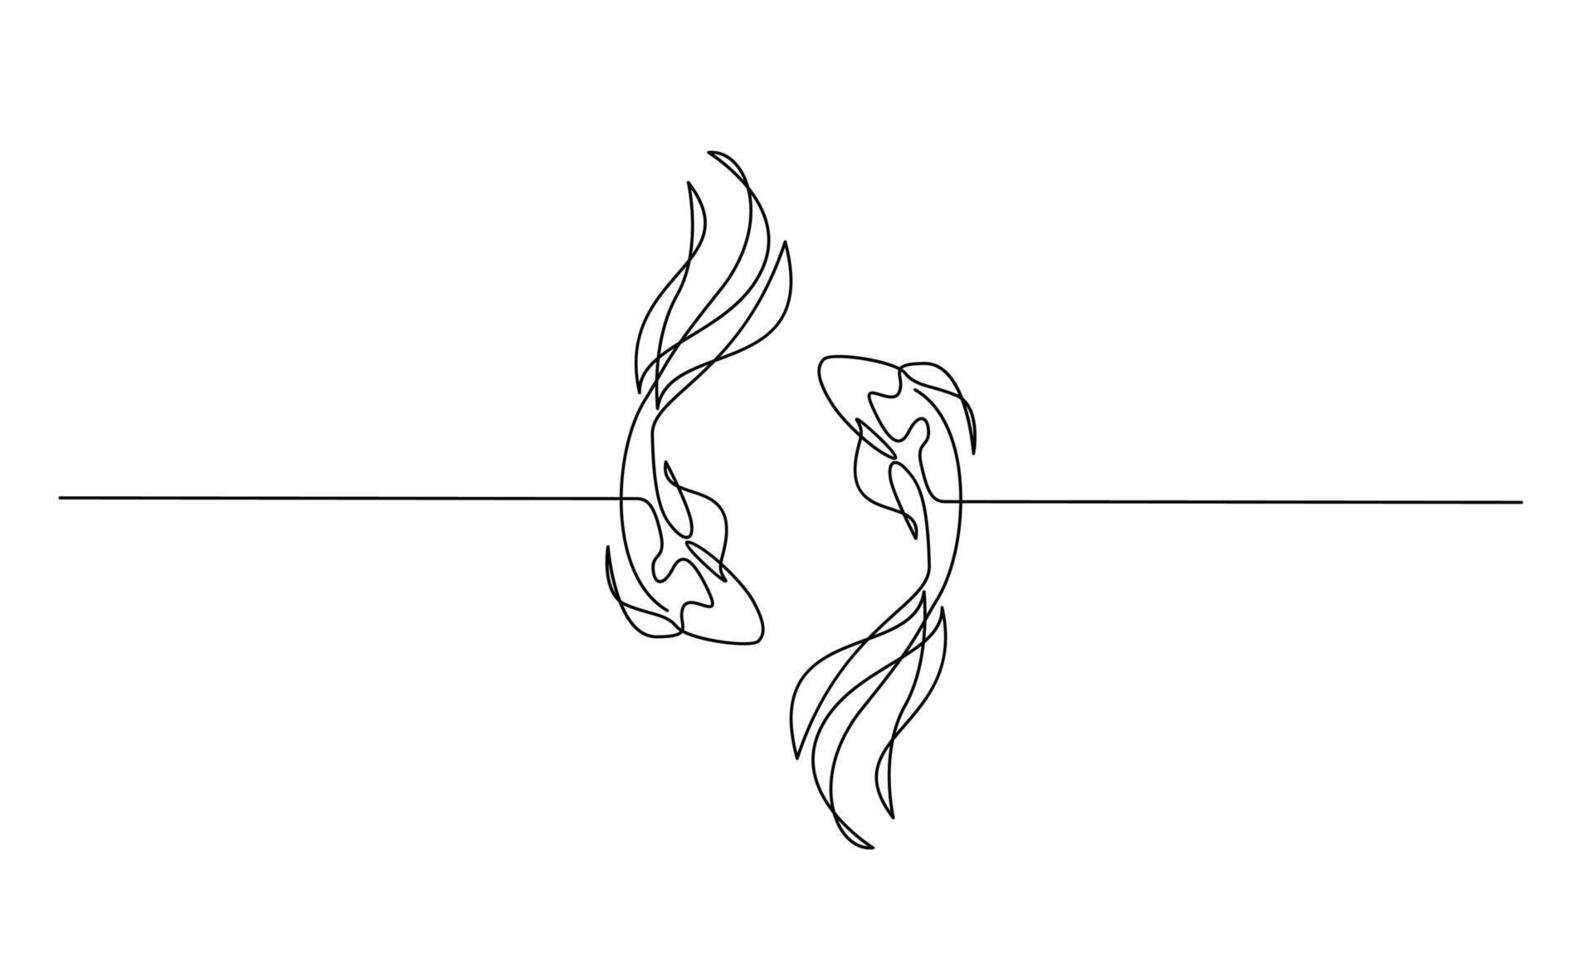 koi karp fisk på de vit bakgrund i en kontinuerlig enda linje teckning stil vektor